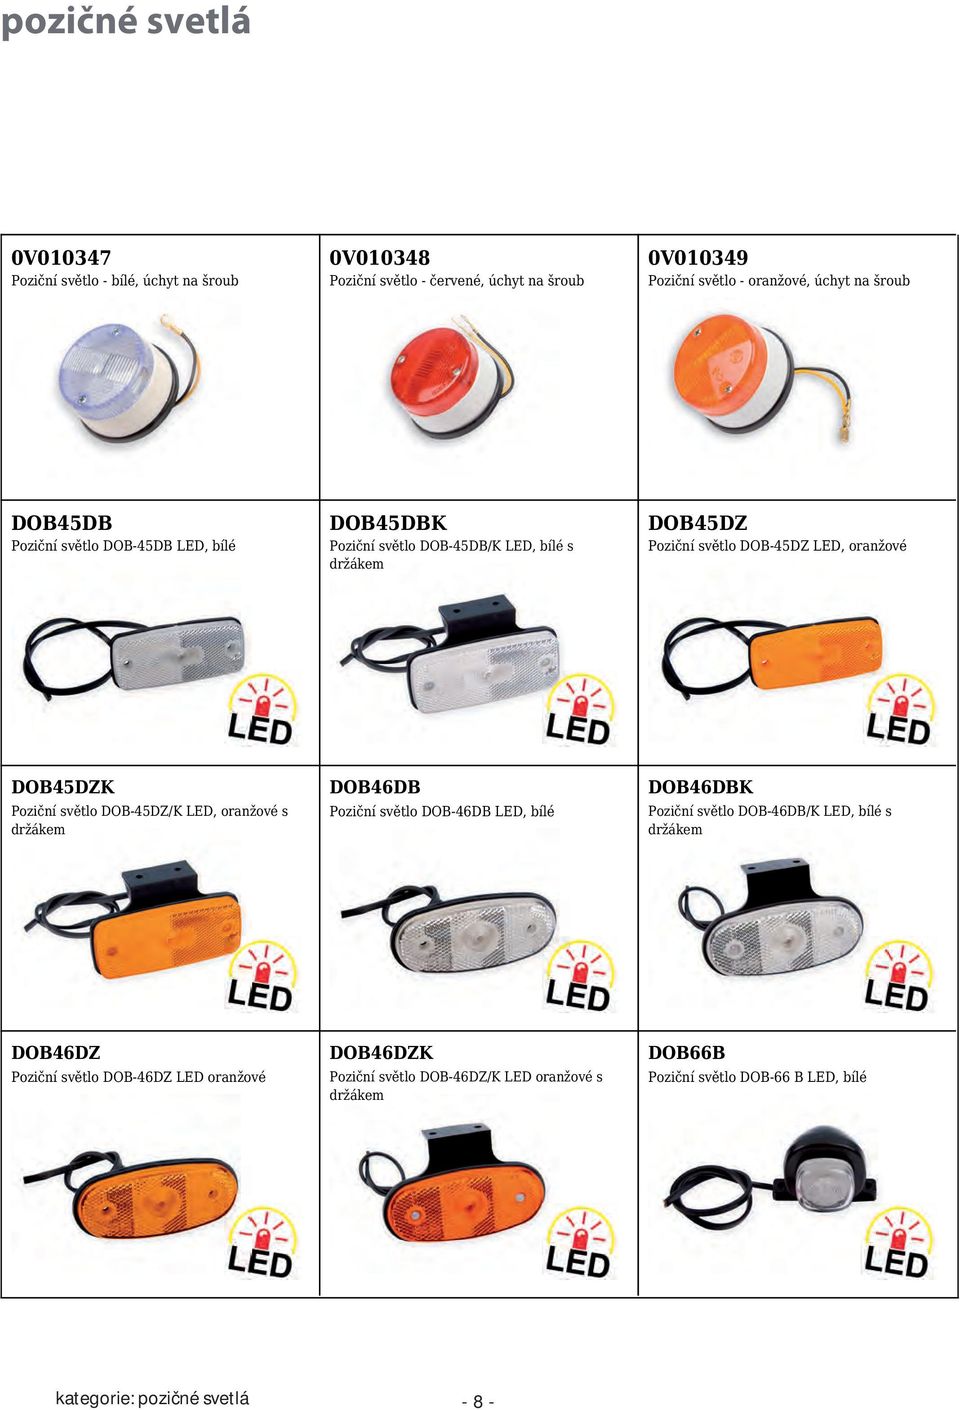 Poziční světlo DOB-45DZ/K LED, oranžové s držákem DOB46DB Poziční světlo DOB-46DB LED, bílé DOB46DBK Poziční světlo DOB-46DB/K LED, bílé s držákem DOB46DZ